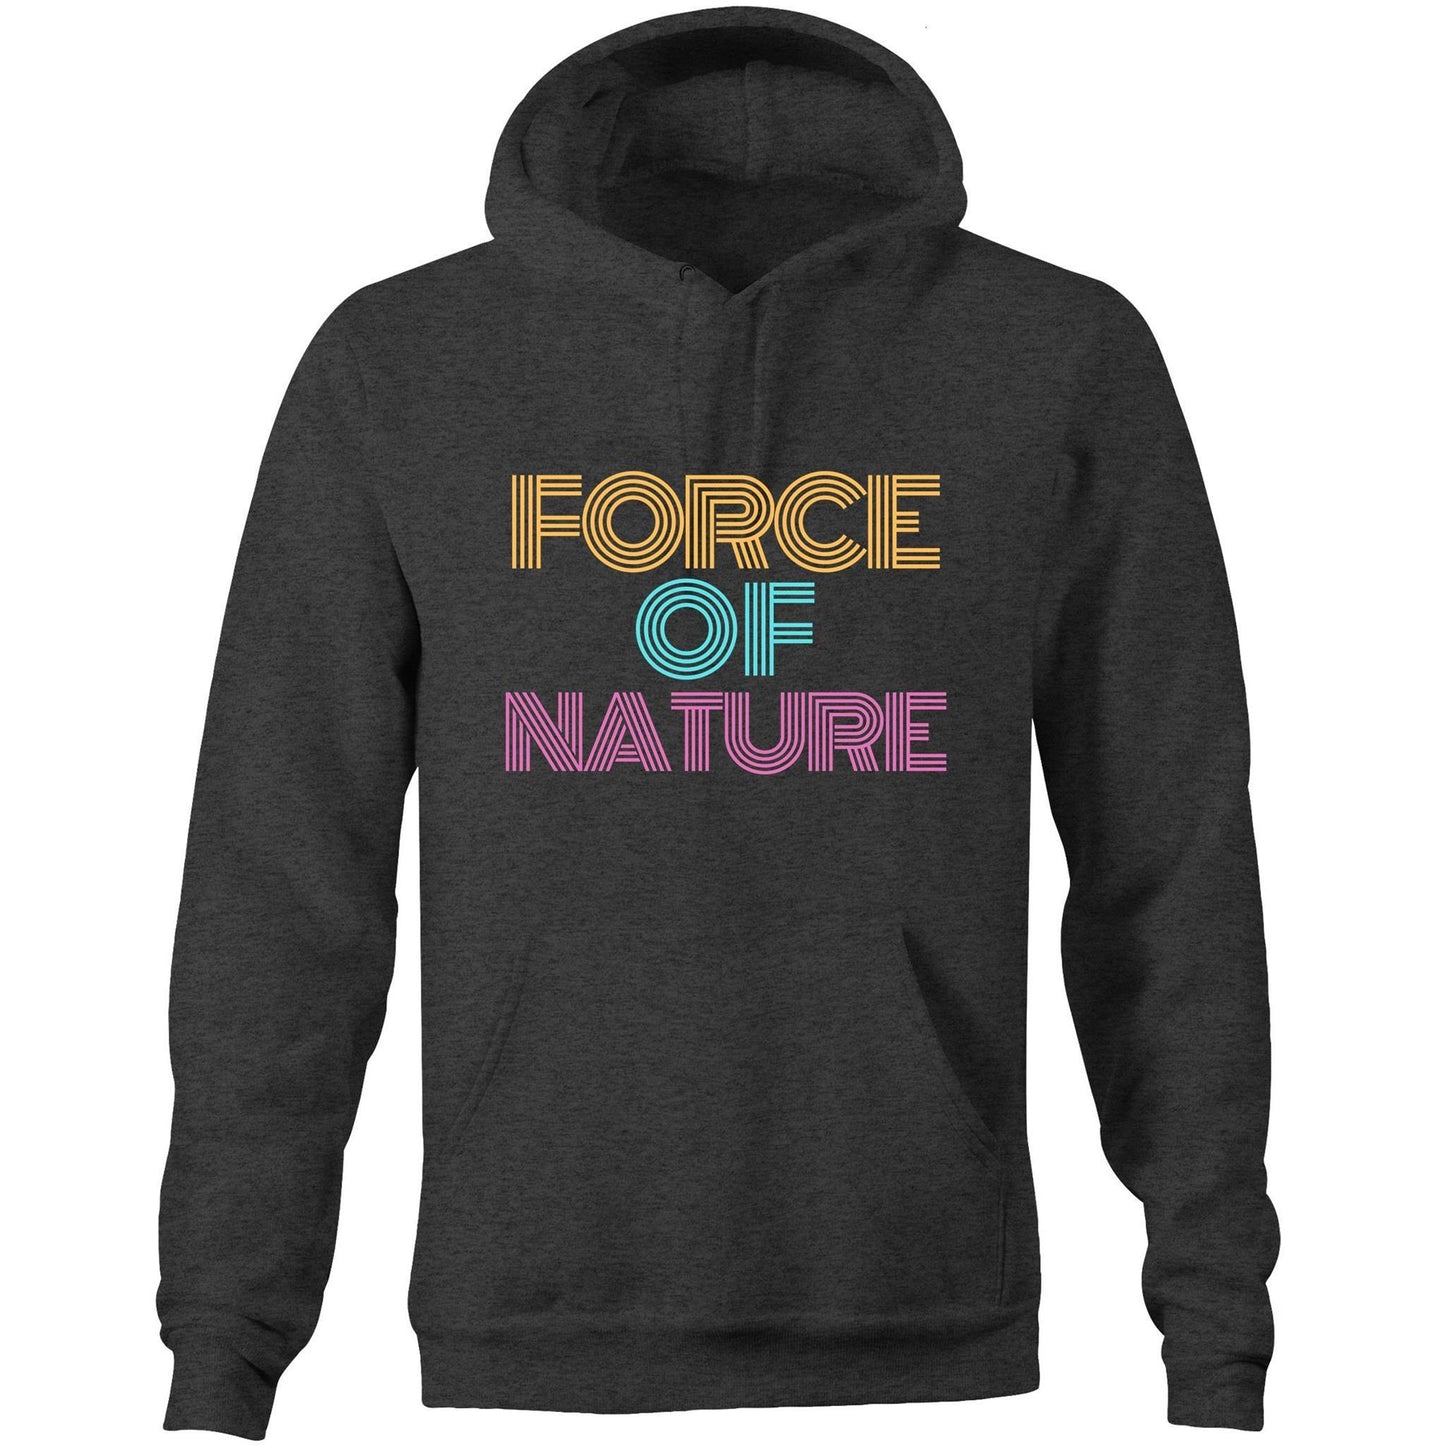 Force Of Nature - Pocket Hoodie Sweatshirt Asphalt Marle Hoodie Mens Womens